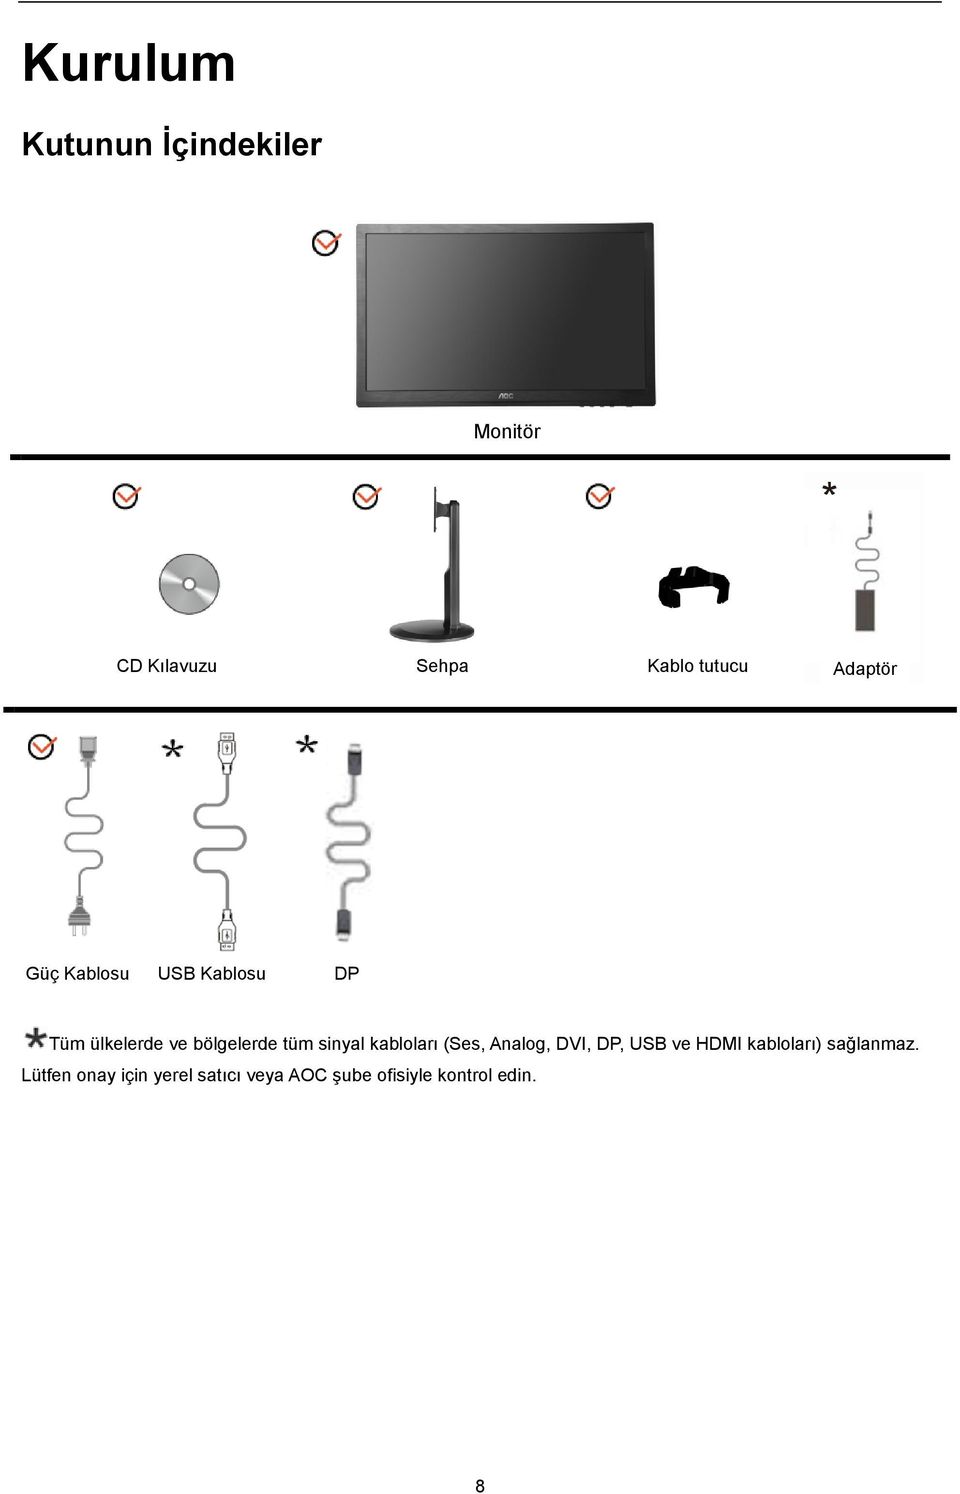 sinyal kabloları (Ses, Analog, DVI, DP, USB ve HDMI kabloları)